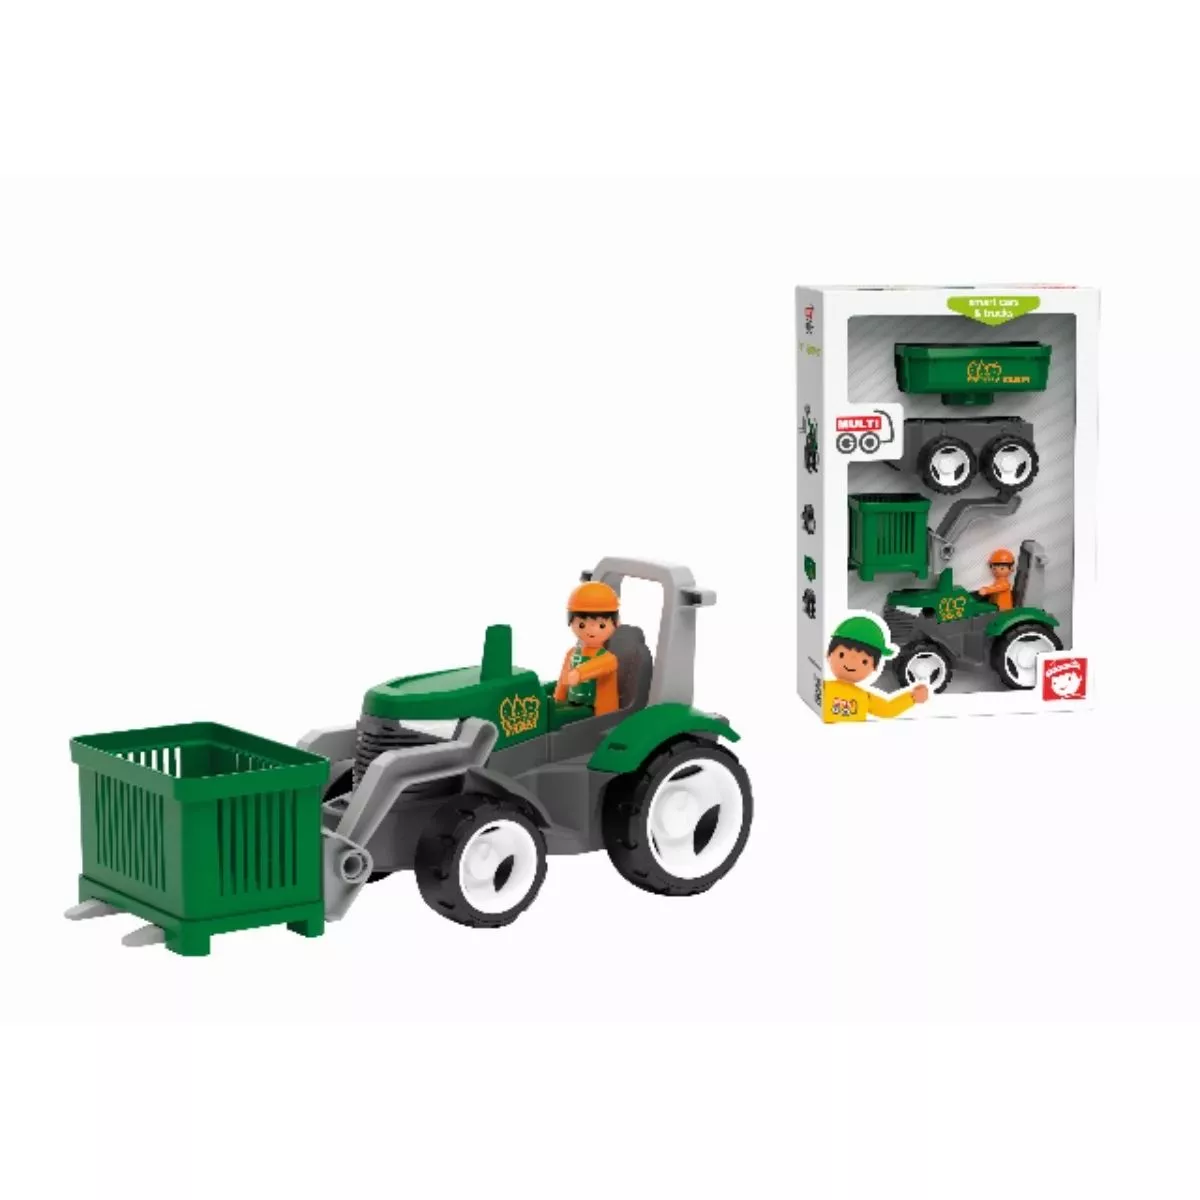 Set tractor cu 1 fermier si accesorii MultiGO 2